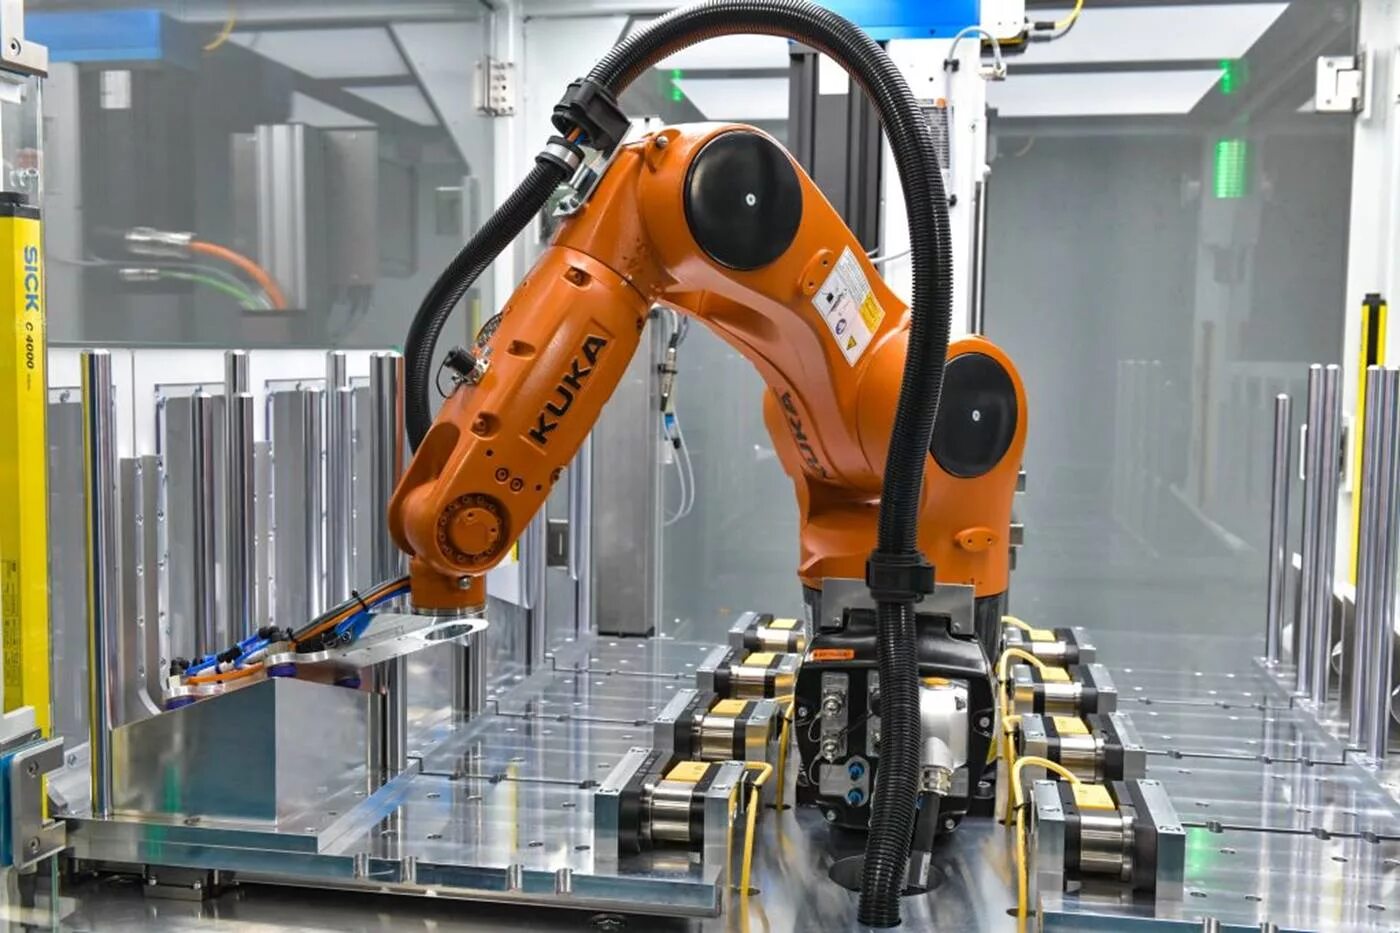 Роботизация промышленности. Kuka kr AGILUS. Kuka Robot конвейер. Первый промышленный робот kuka. Роботизированный манипулятор kuka AGILUS.